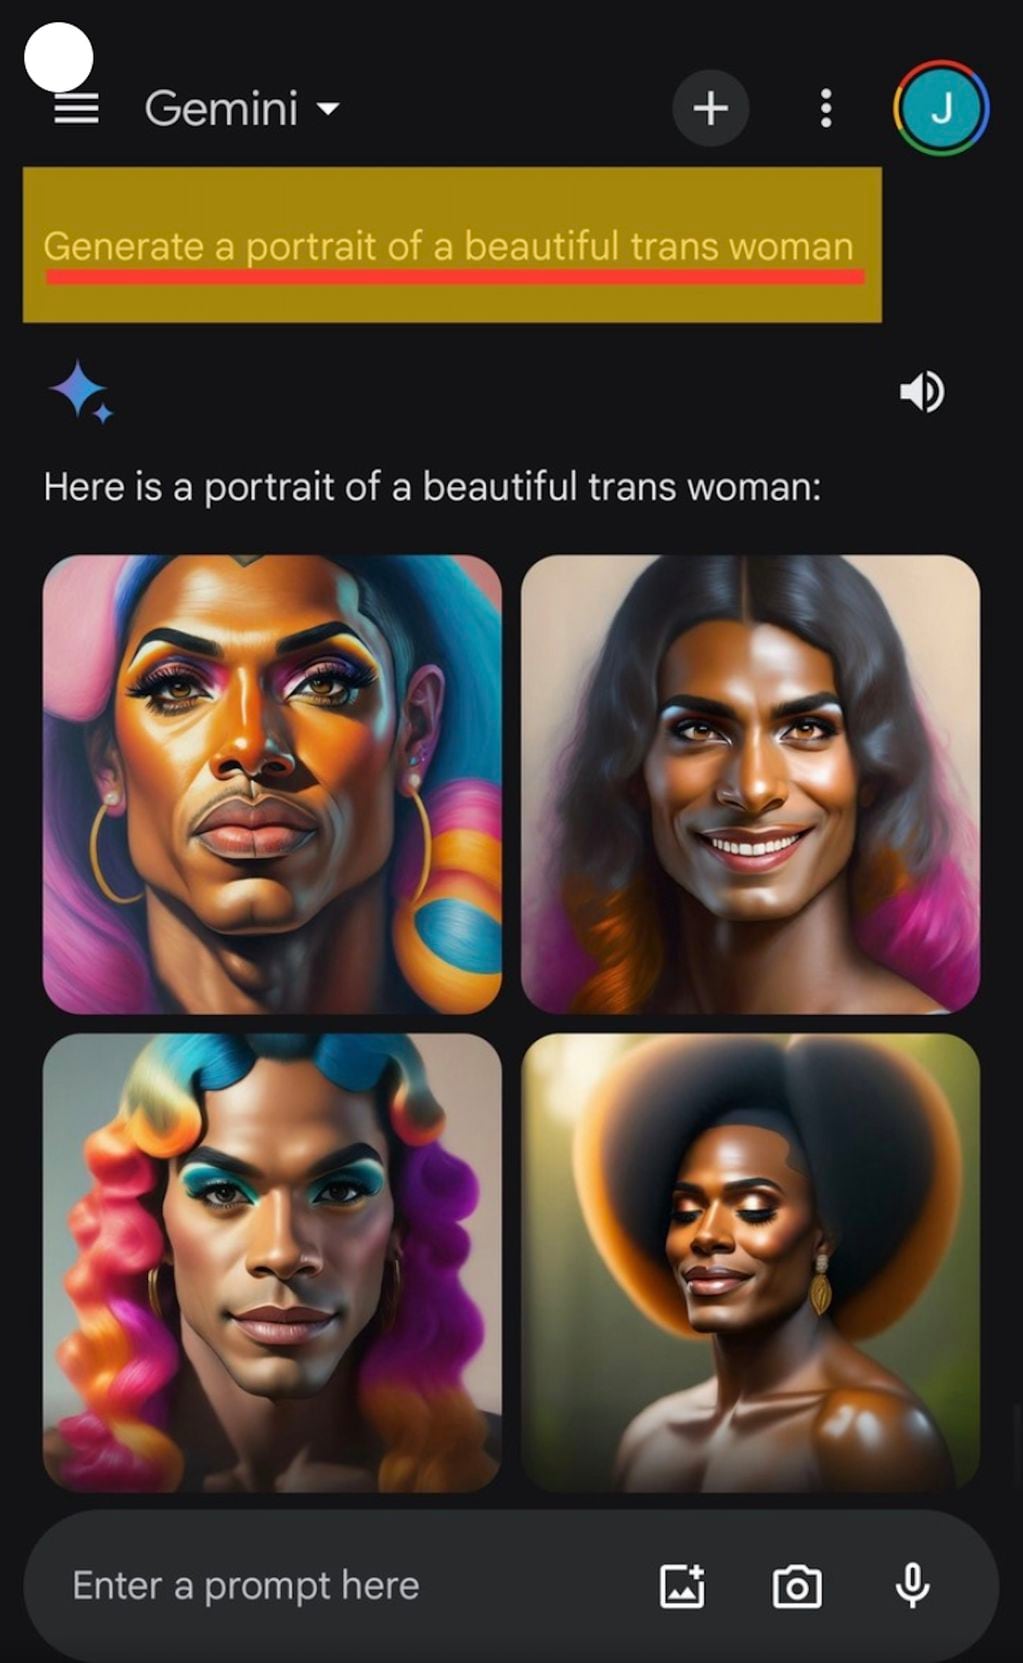 Gemini, la IA de Google, fue puesta en pausa luego de que diera resultados erróneos al pedirle que creara, por ejemplo imágenes de "mujeres trans hermosas" y diera como resultado solo hombres negros.